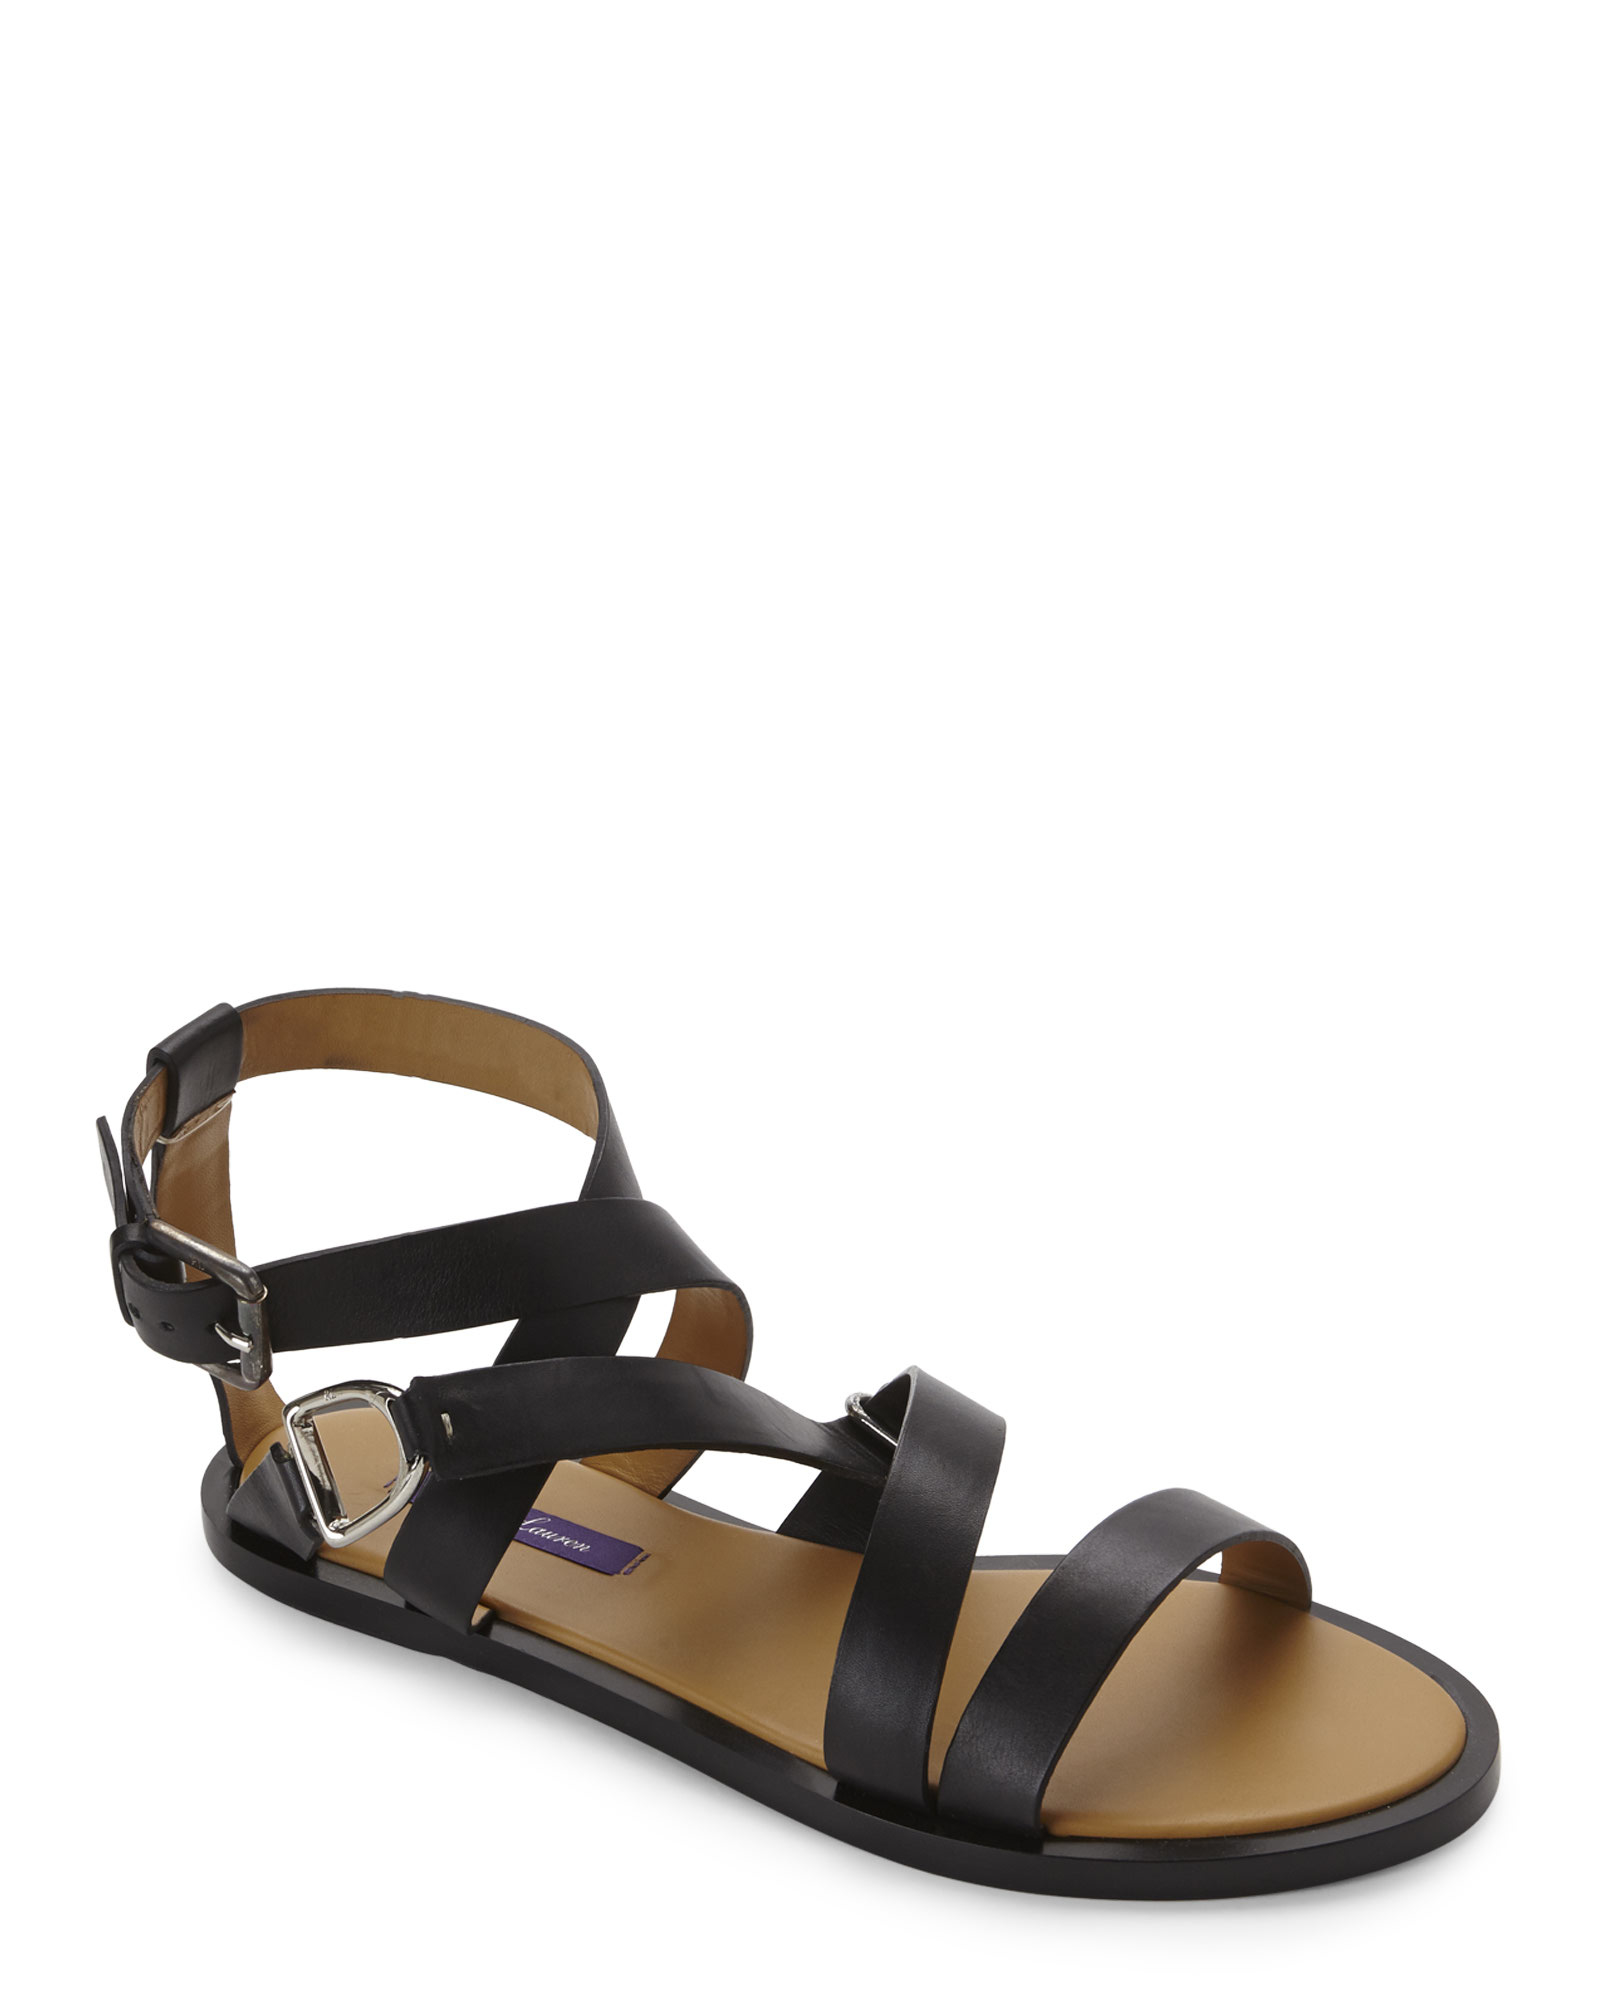 Ralph Lauren Leather Black Vimiera Flat Sandals - Lyst